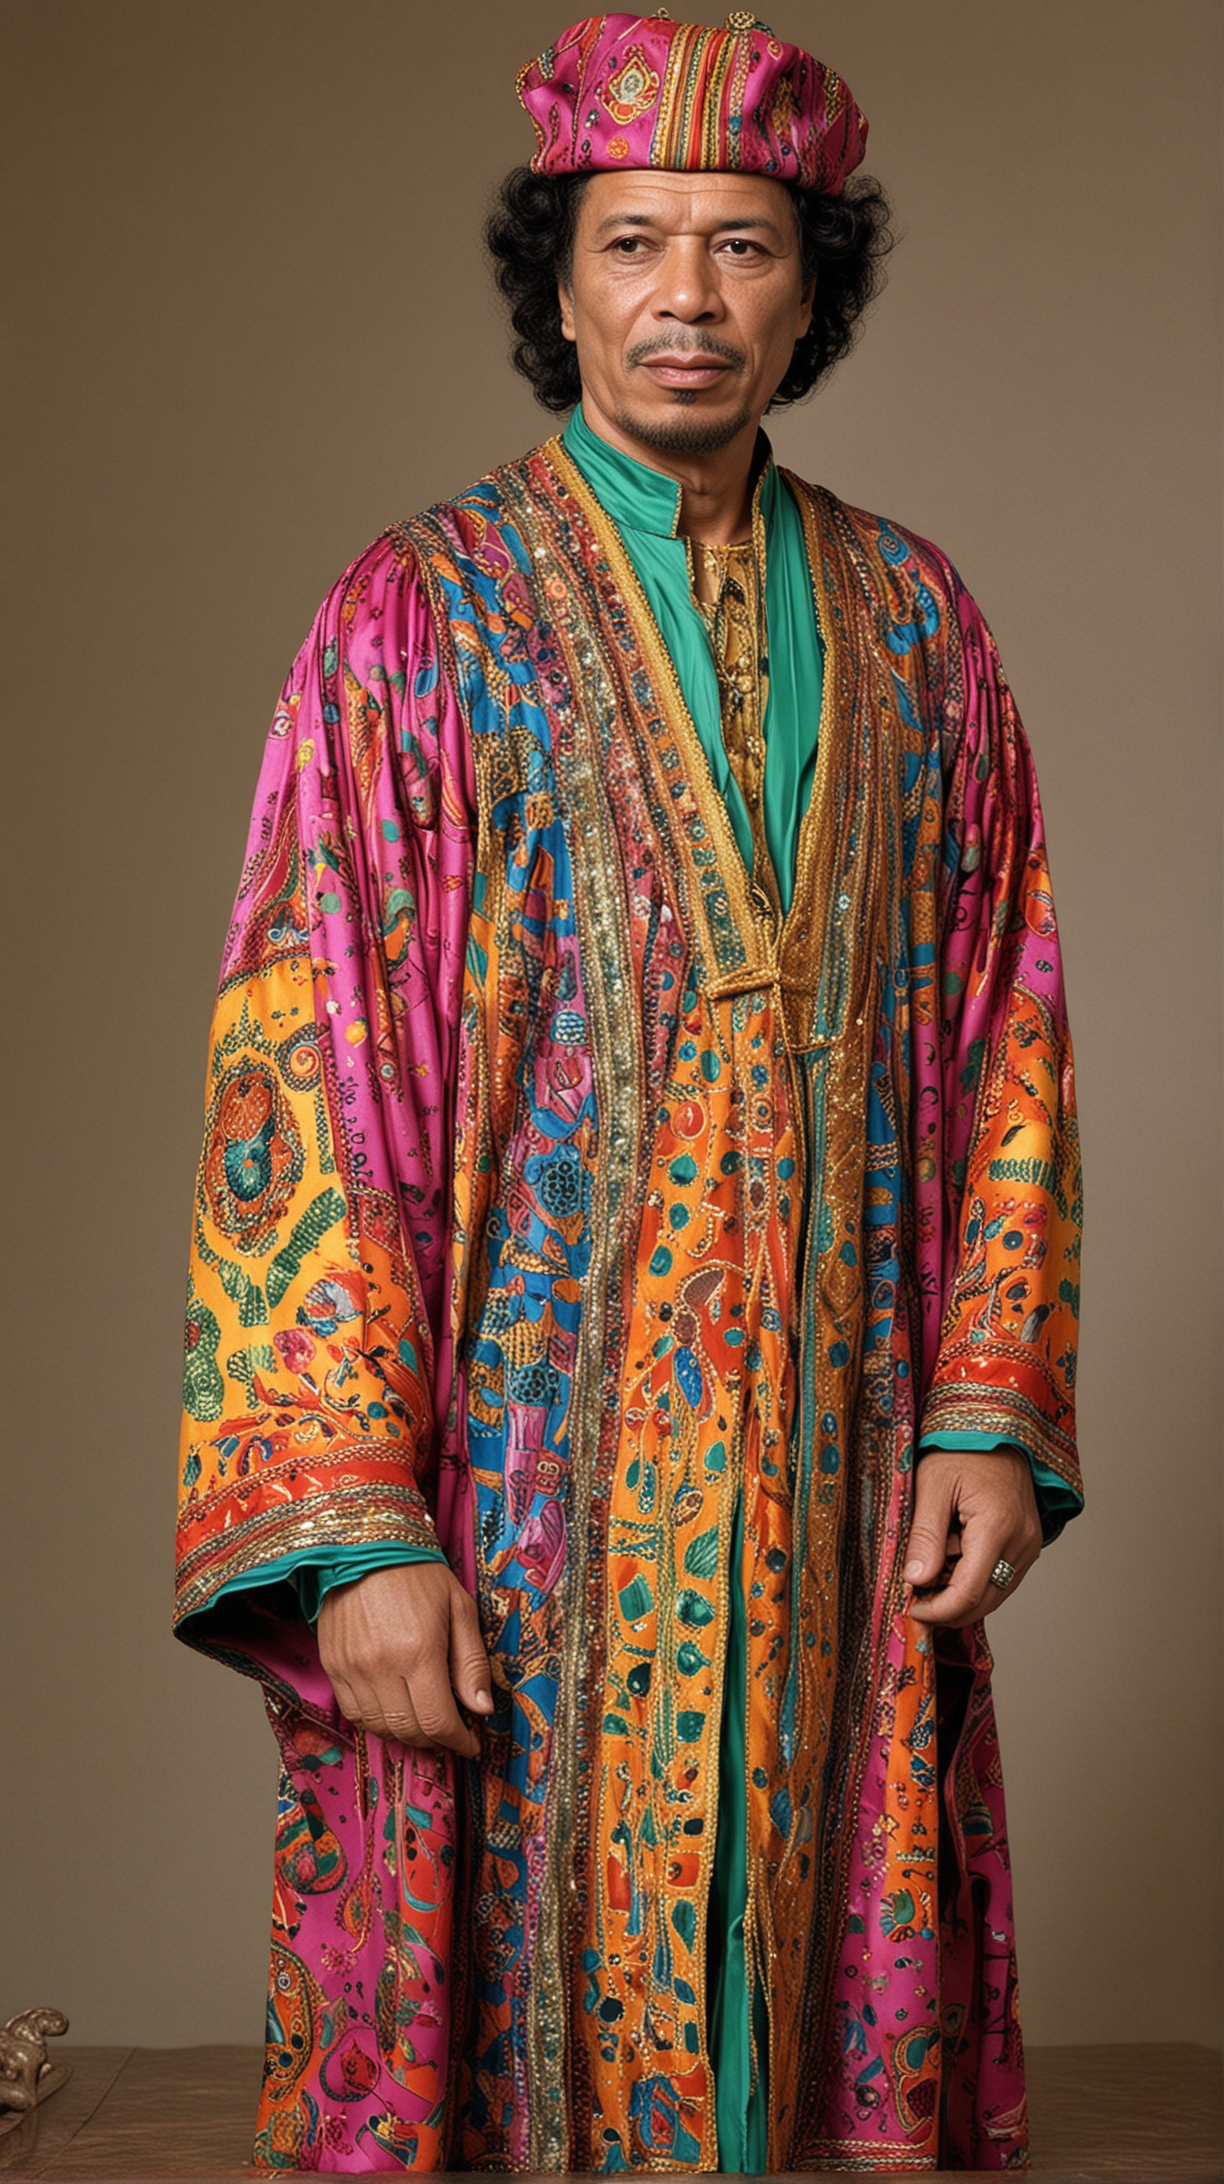 Muammar Gaddafi in a vibrant, colorful robe, showcasing his eccentric fashion sense.